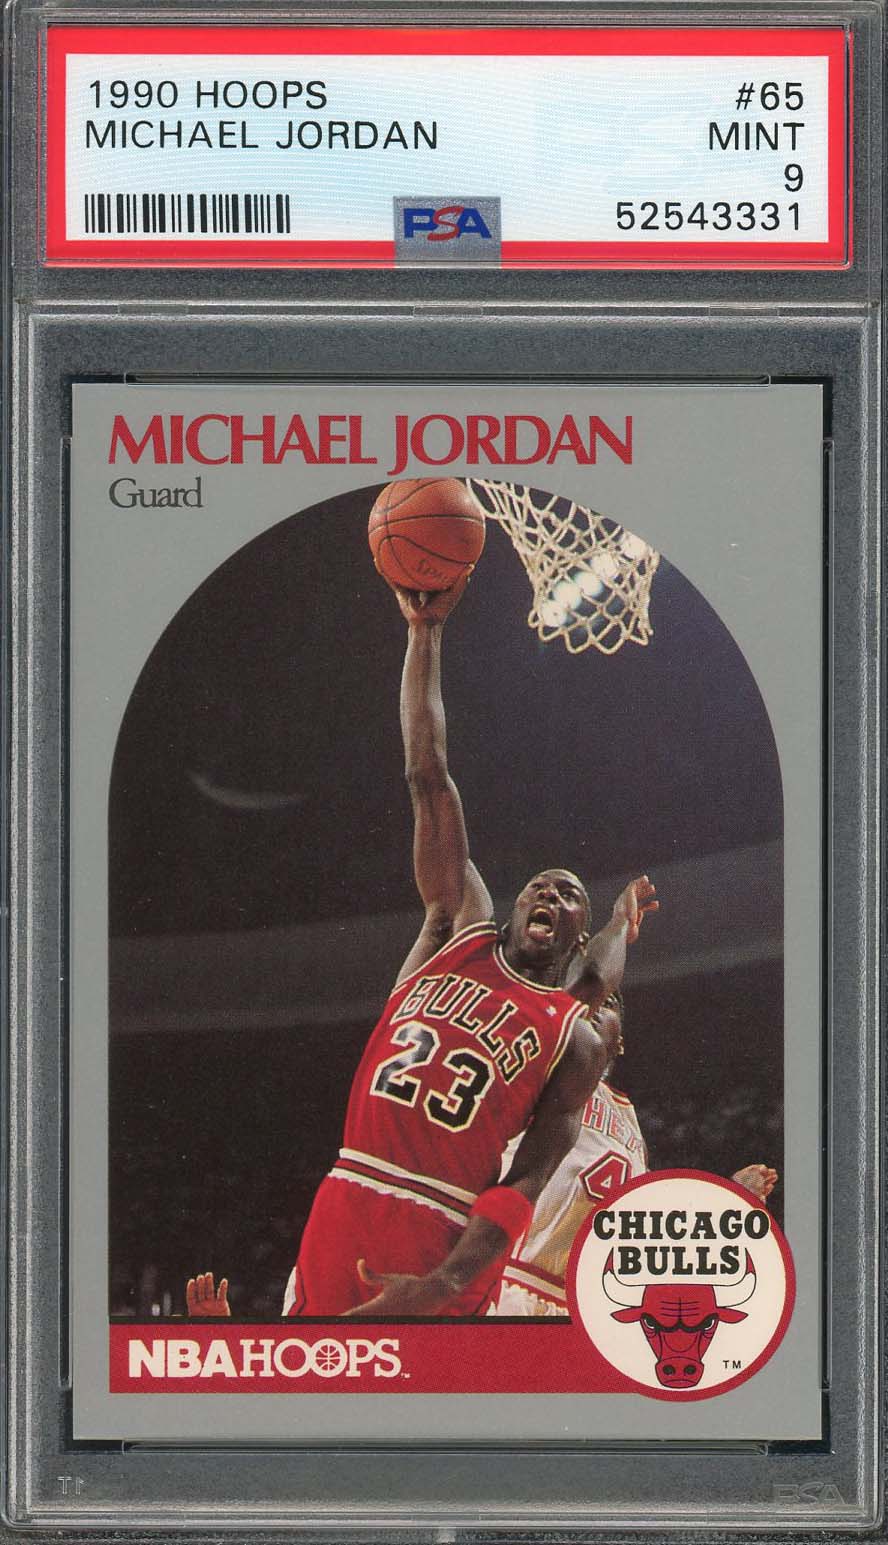 マイケル ジョーダン 1990 フープ バスケットボール カード #65